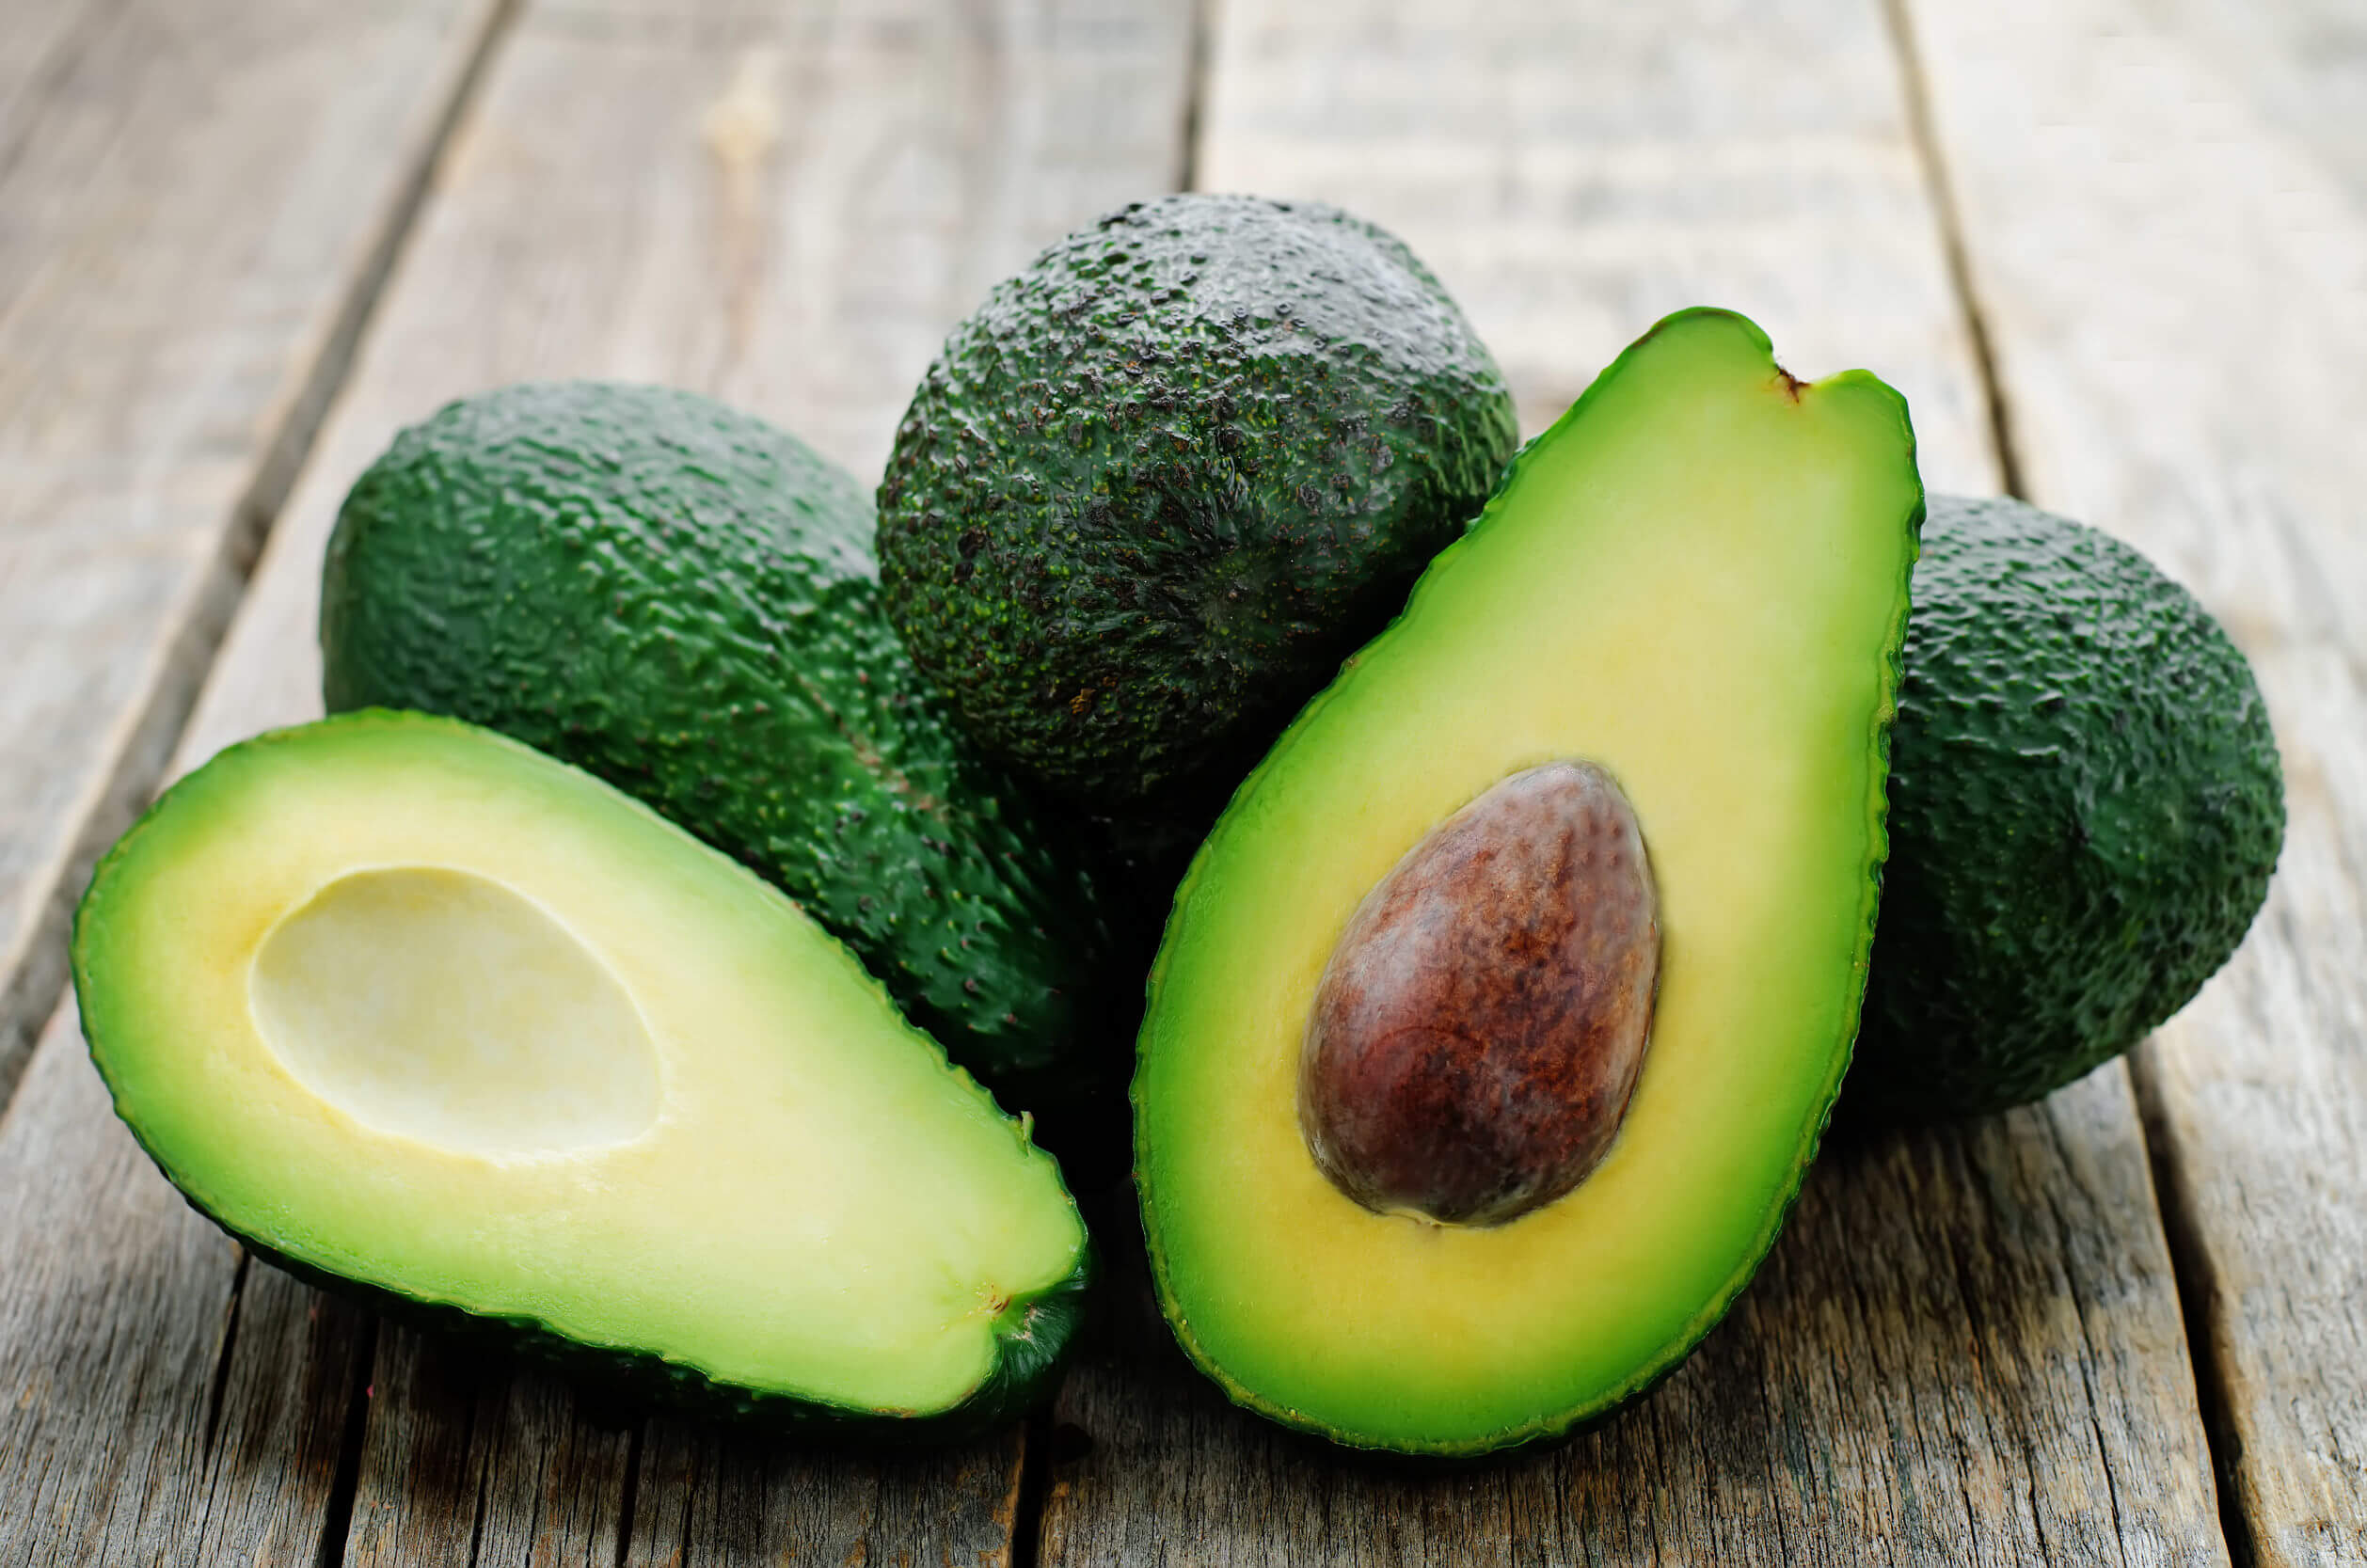 Non tutti i tipi di grasso sono uguali. Quelli presenti nell'avocado sono sani.